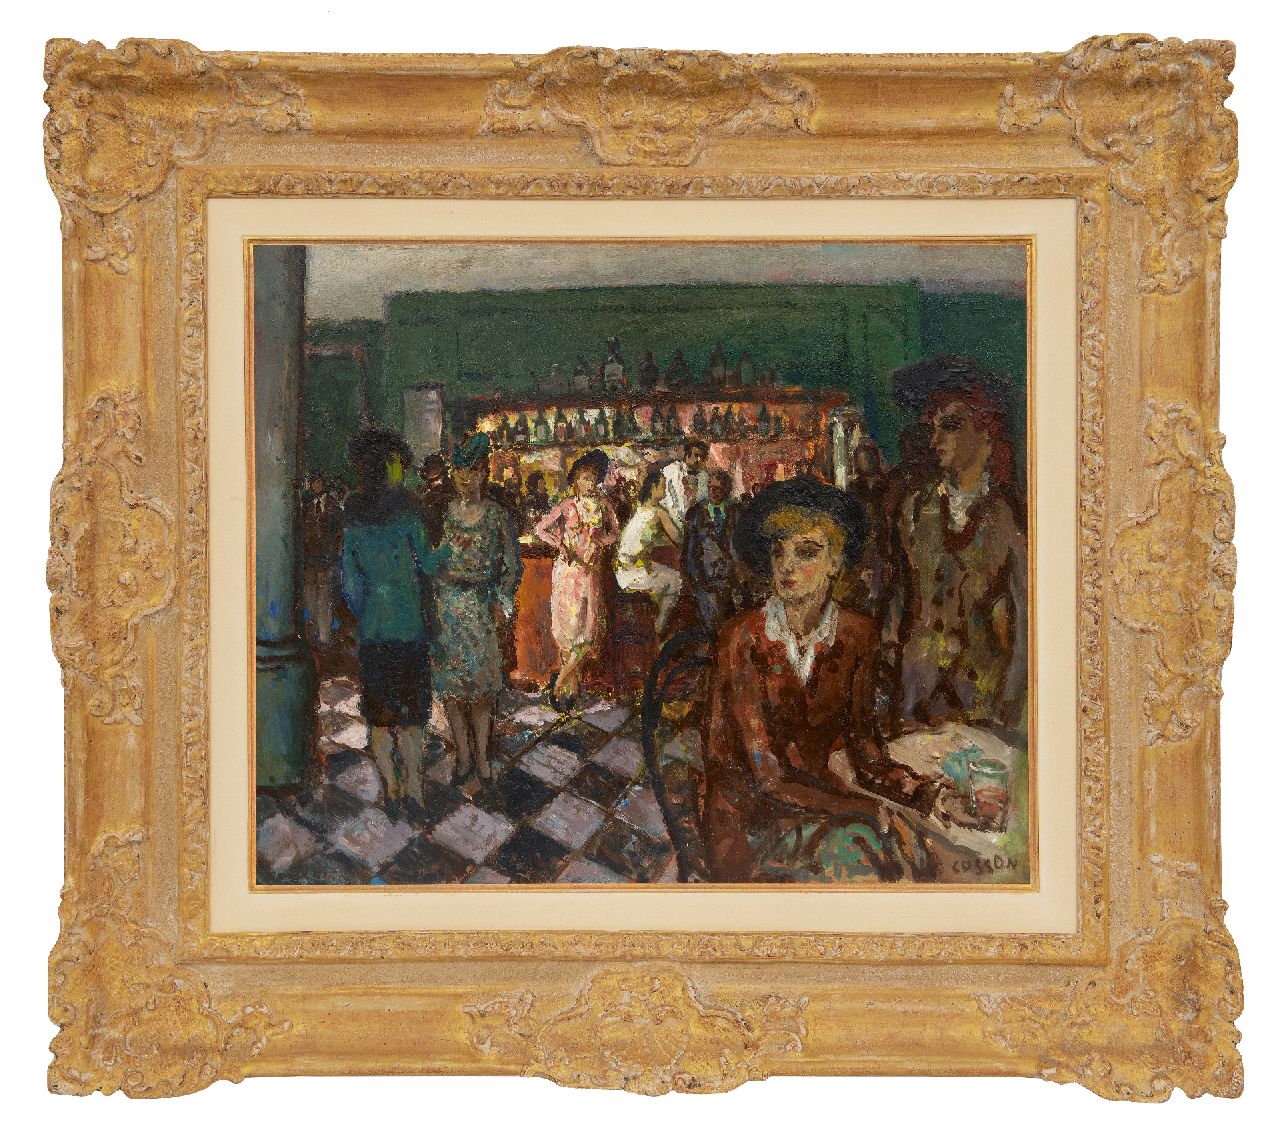 Cosson J.L.M.  | Jean Louis 'Marcel' Cosson | Schilderijen te koop aangeboden | In het café, olieverf op board 38,0 x 45,8 cm, gesigneerd rechtsonder